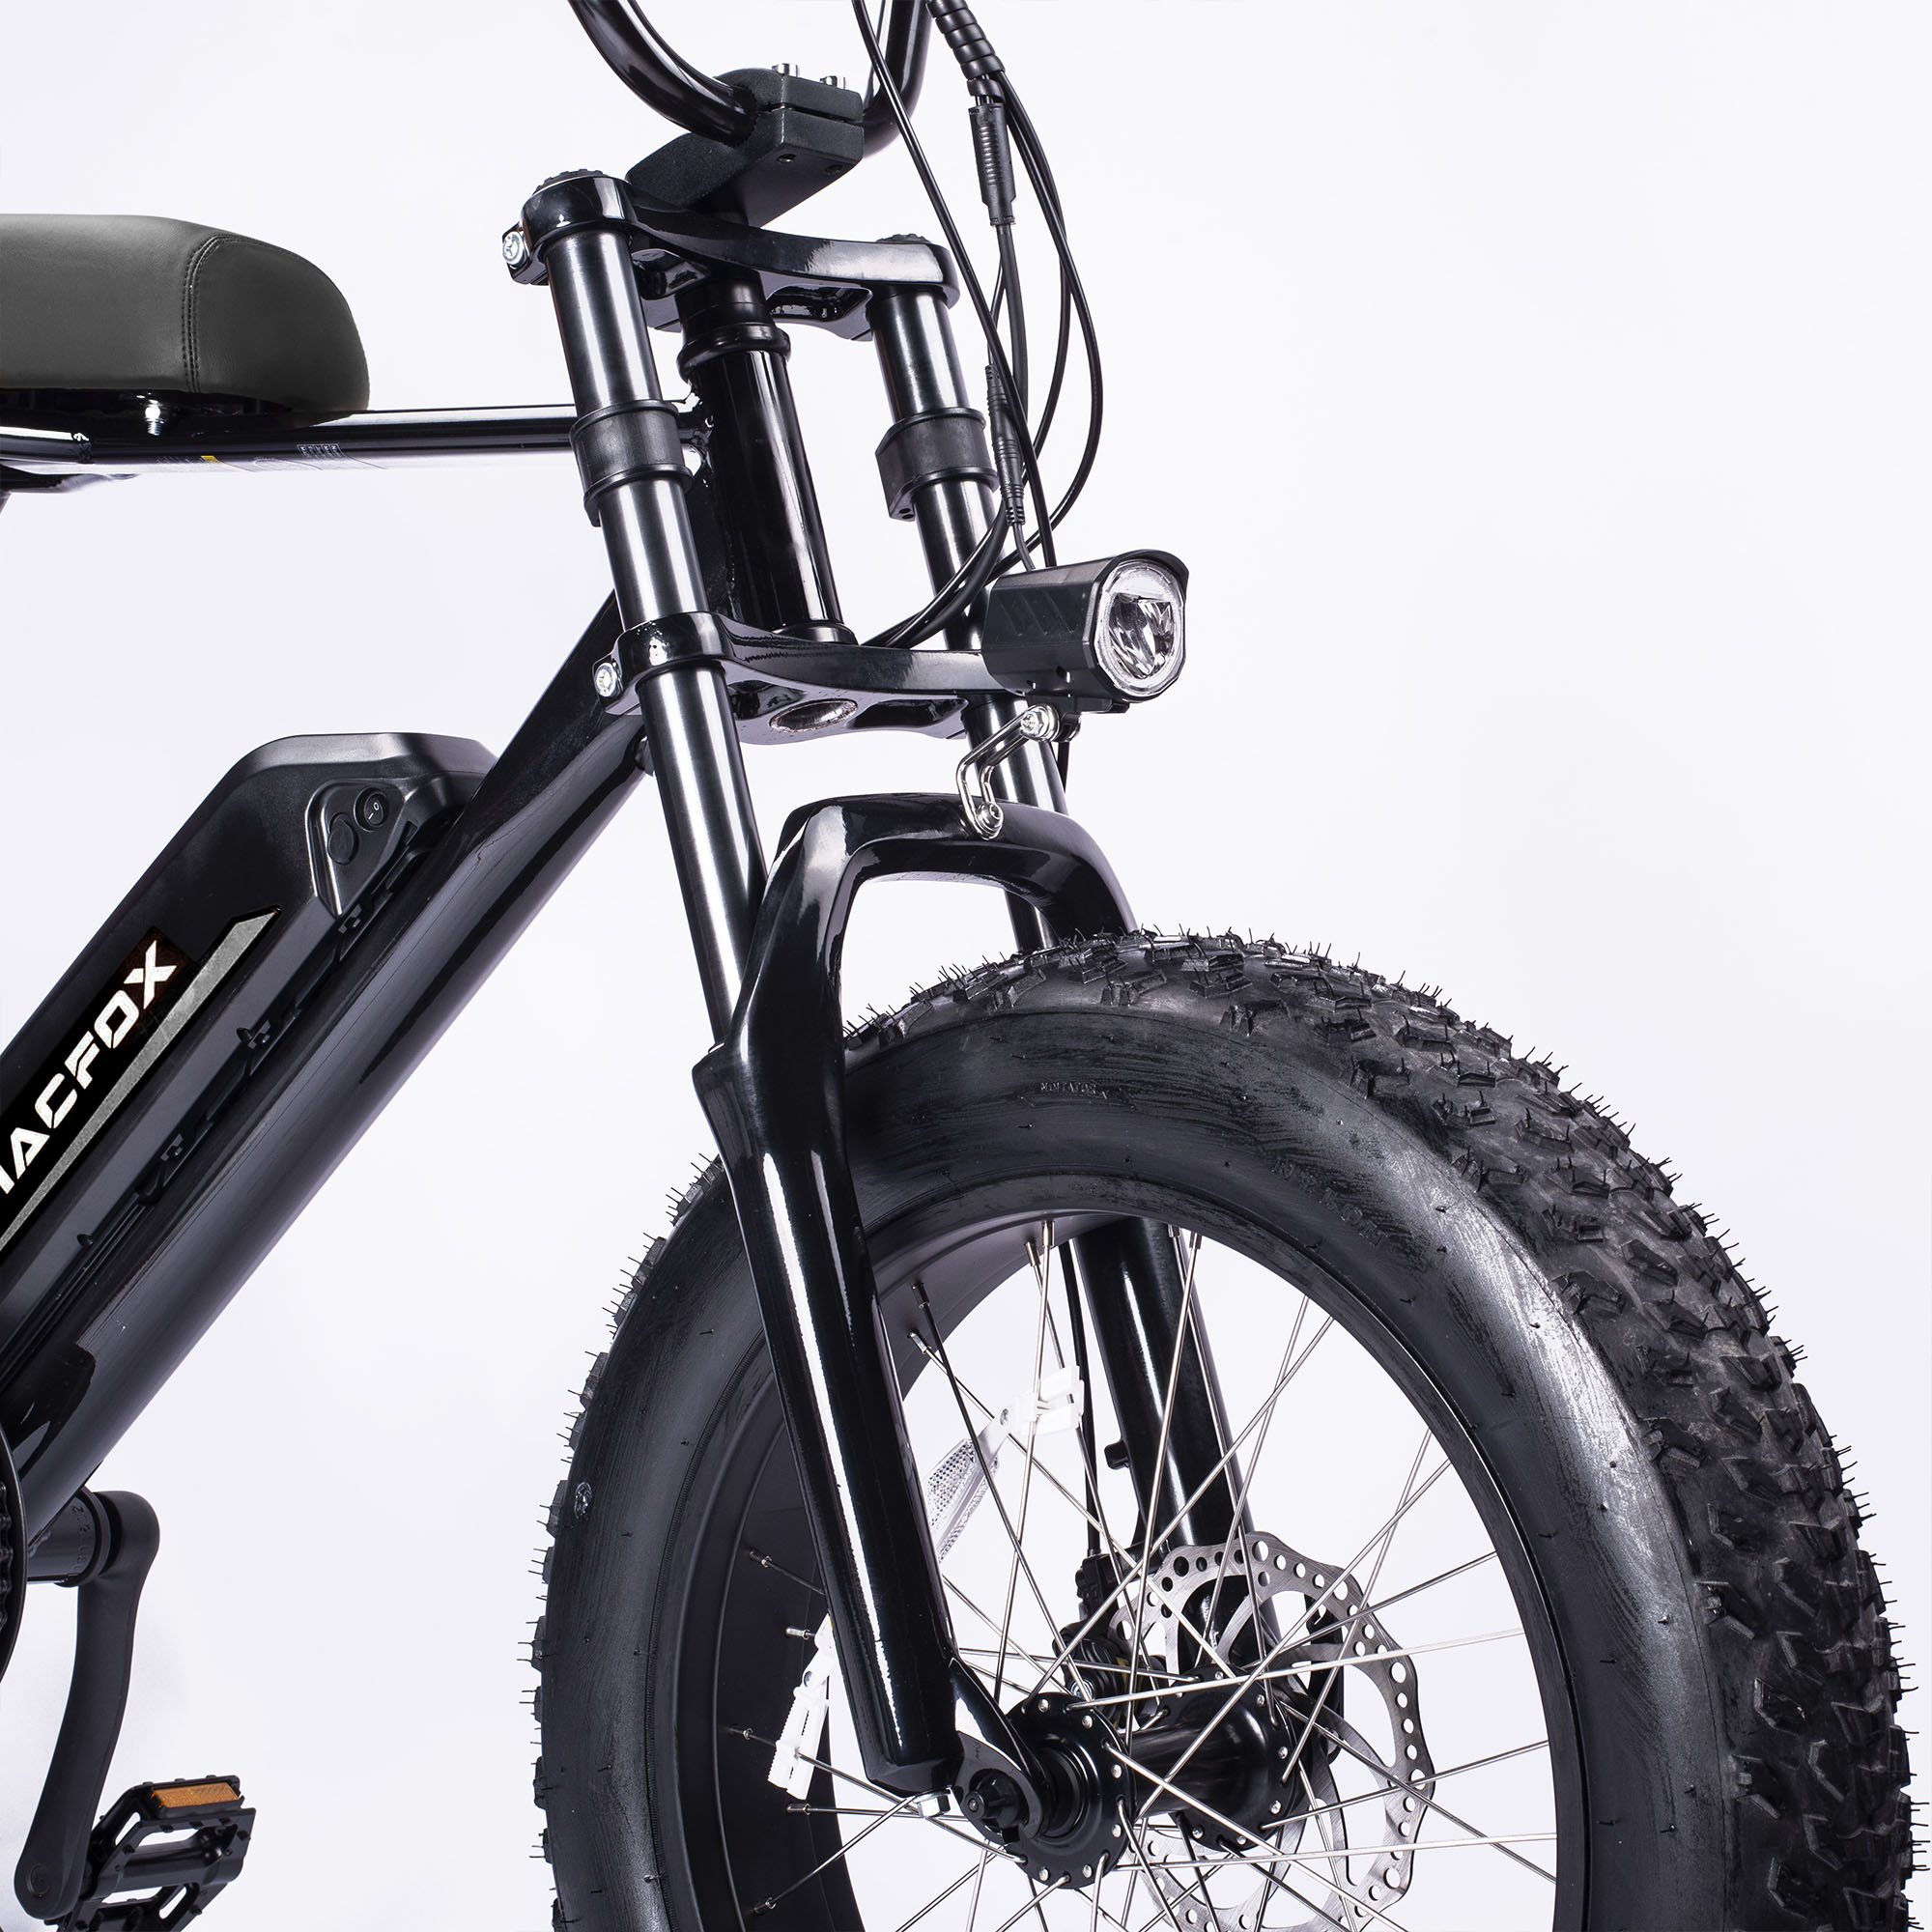 macfox-mini-swell-electric-bike-black